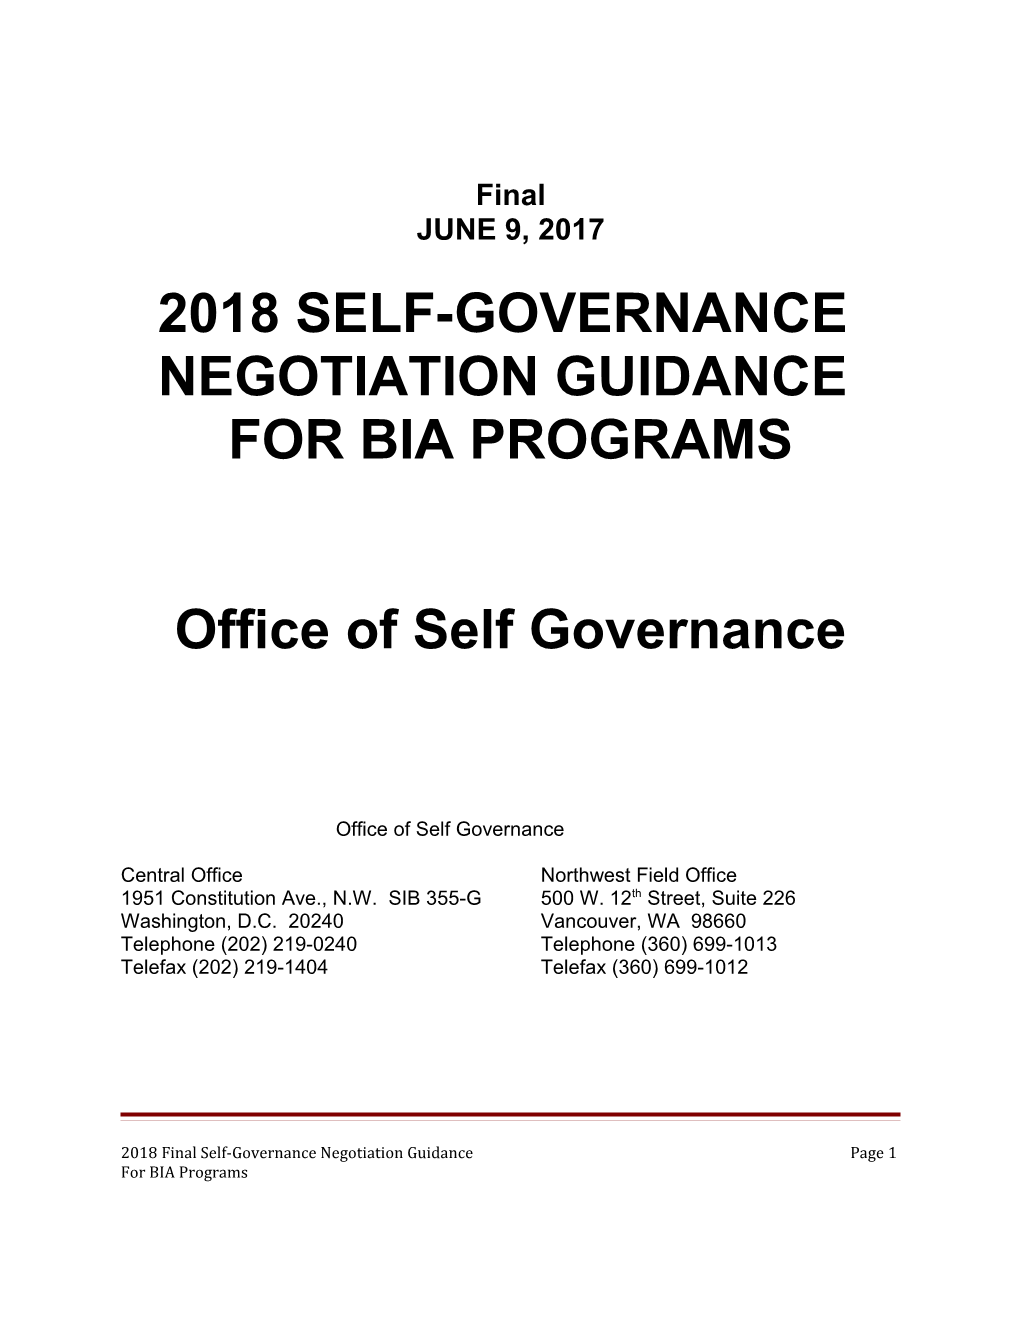 2018 Self-Governance